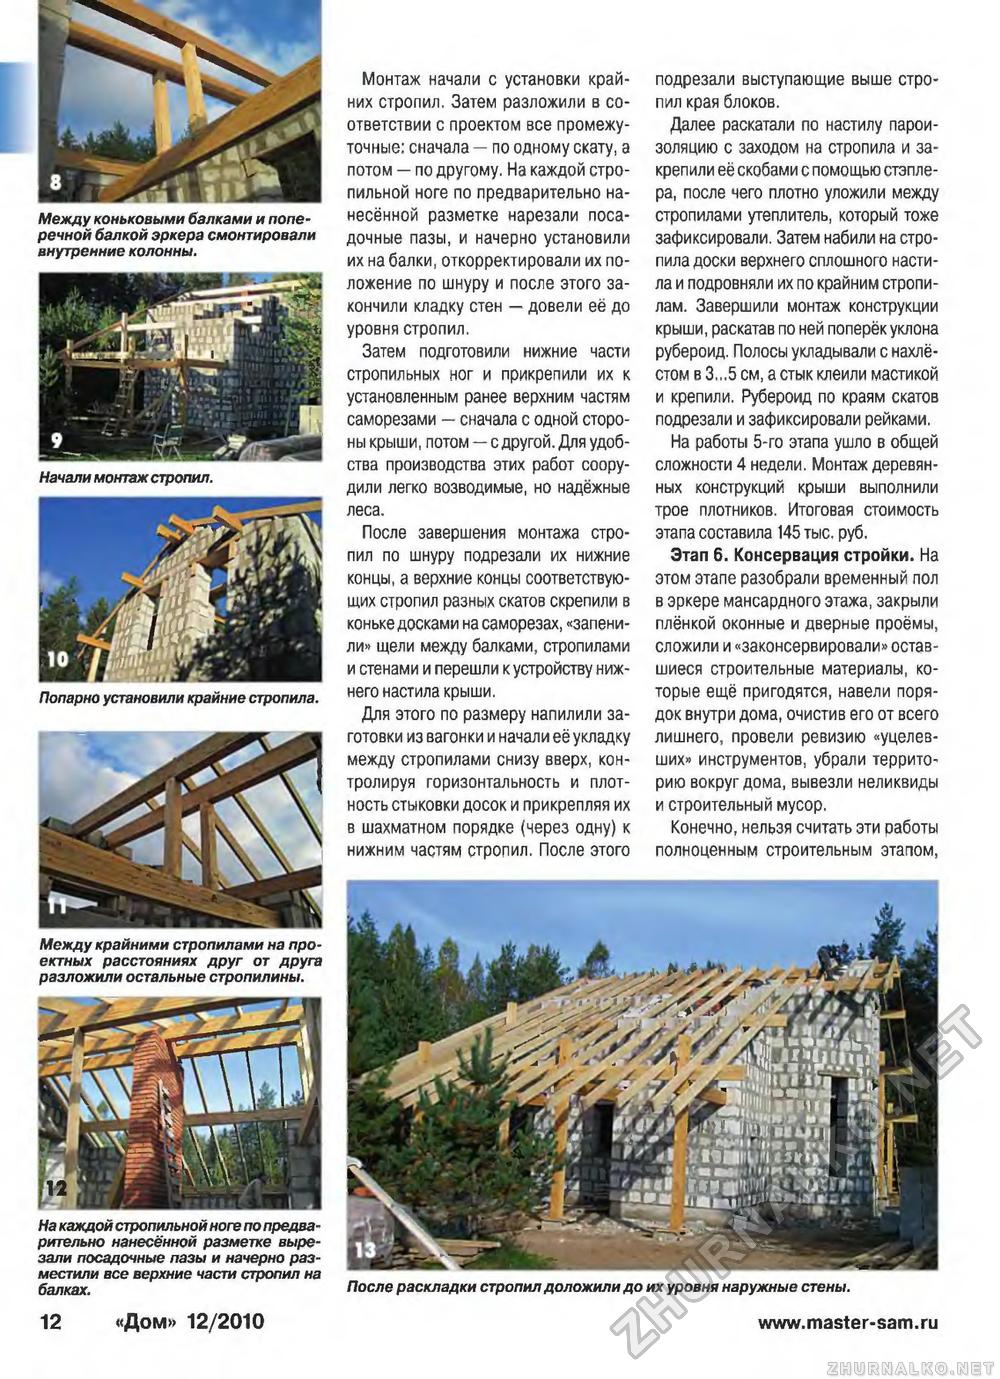 Дом 2010-12, страница 12